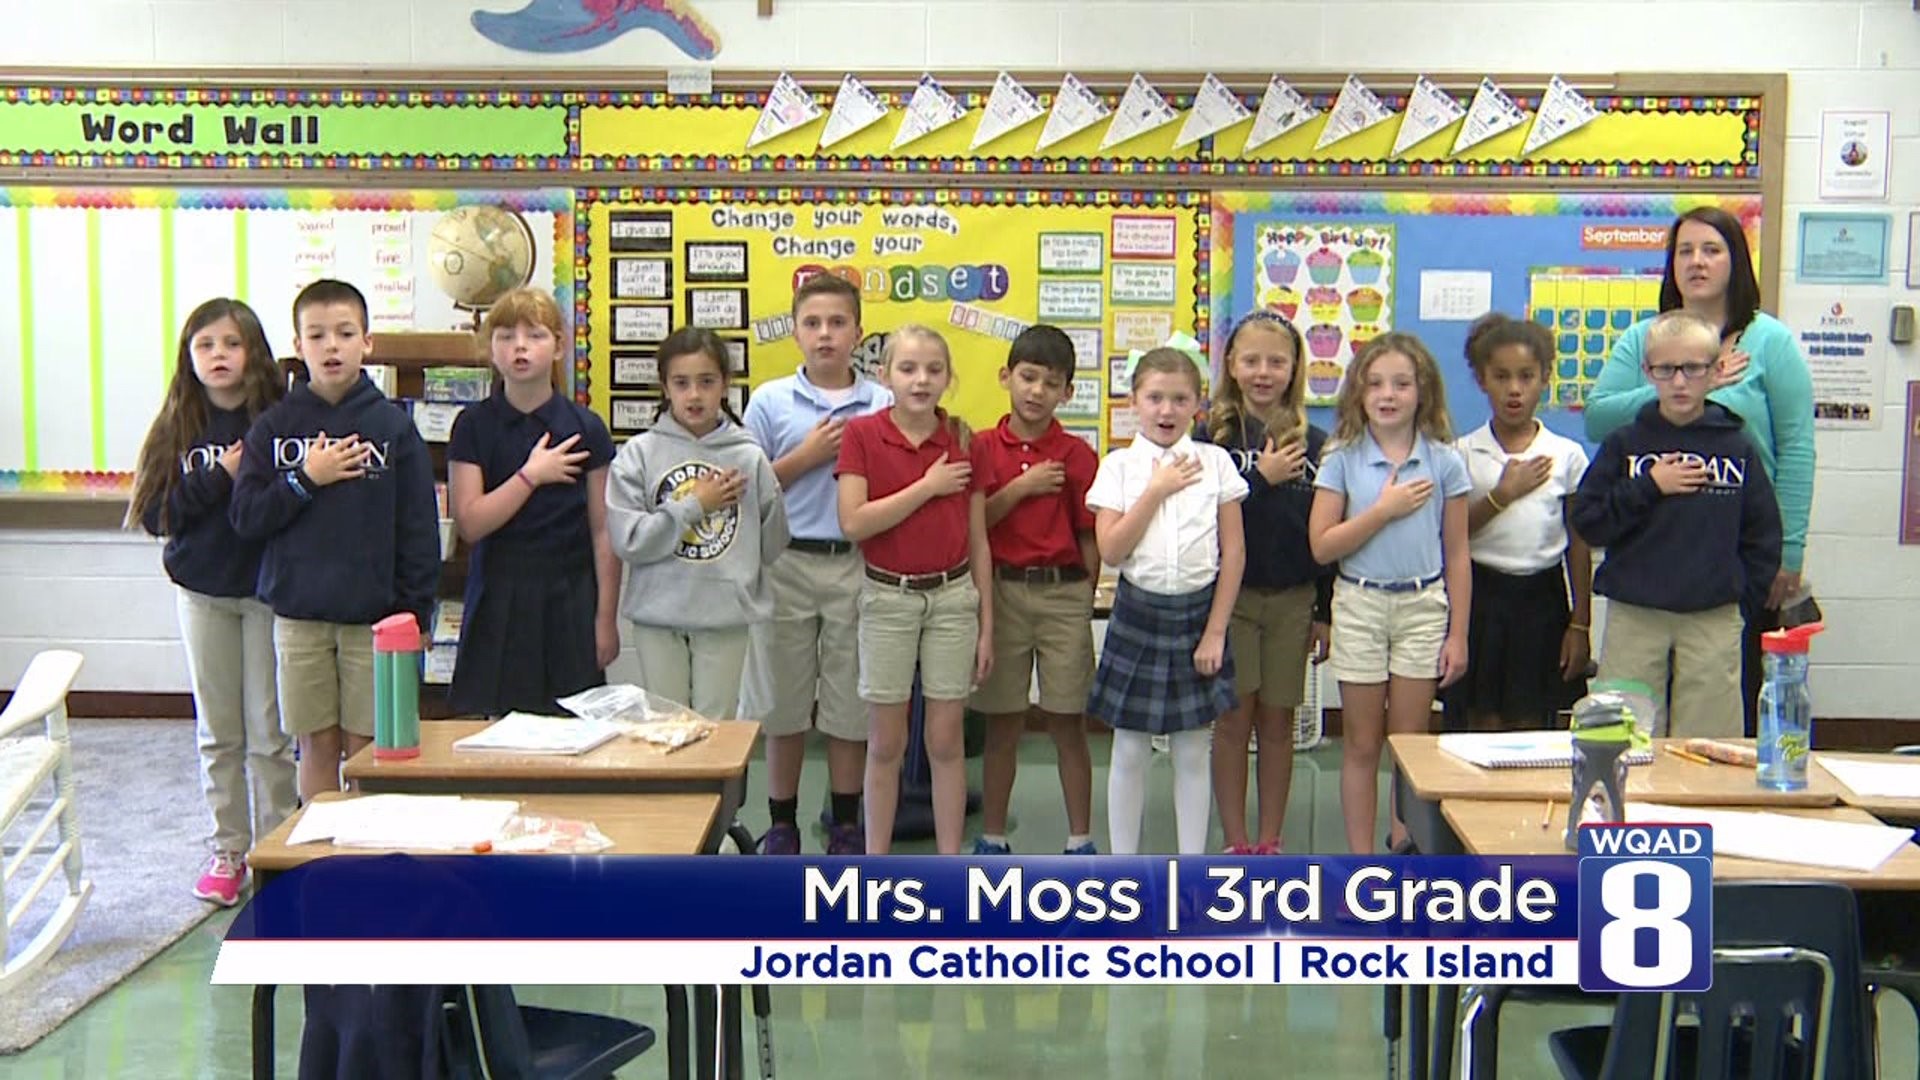 Mrs Moss 3rd grade - Jordan